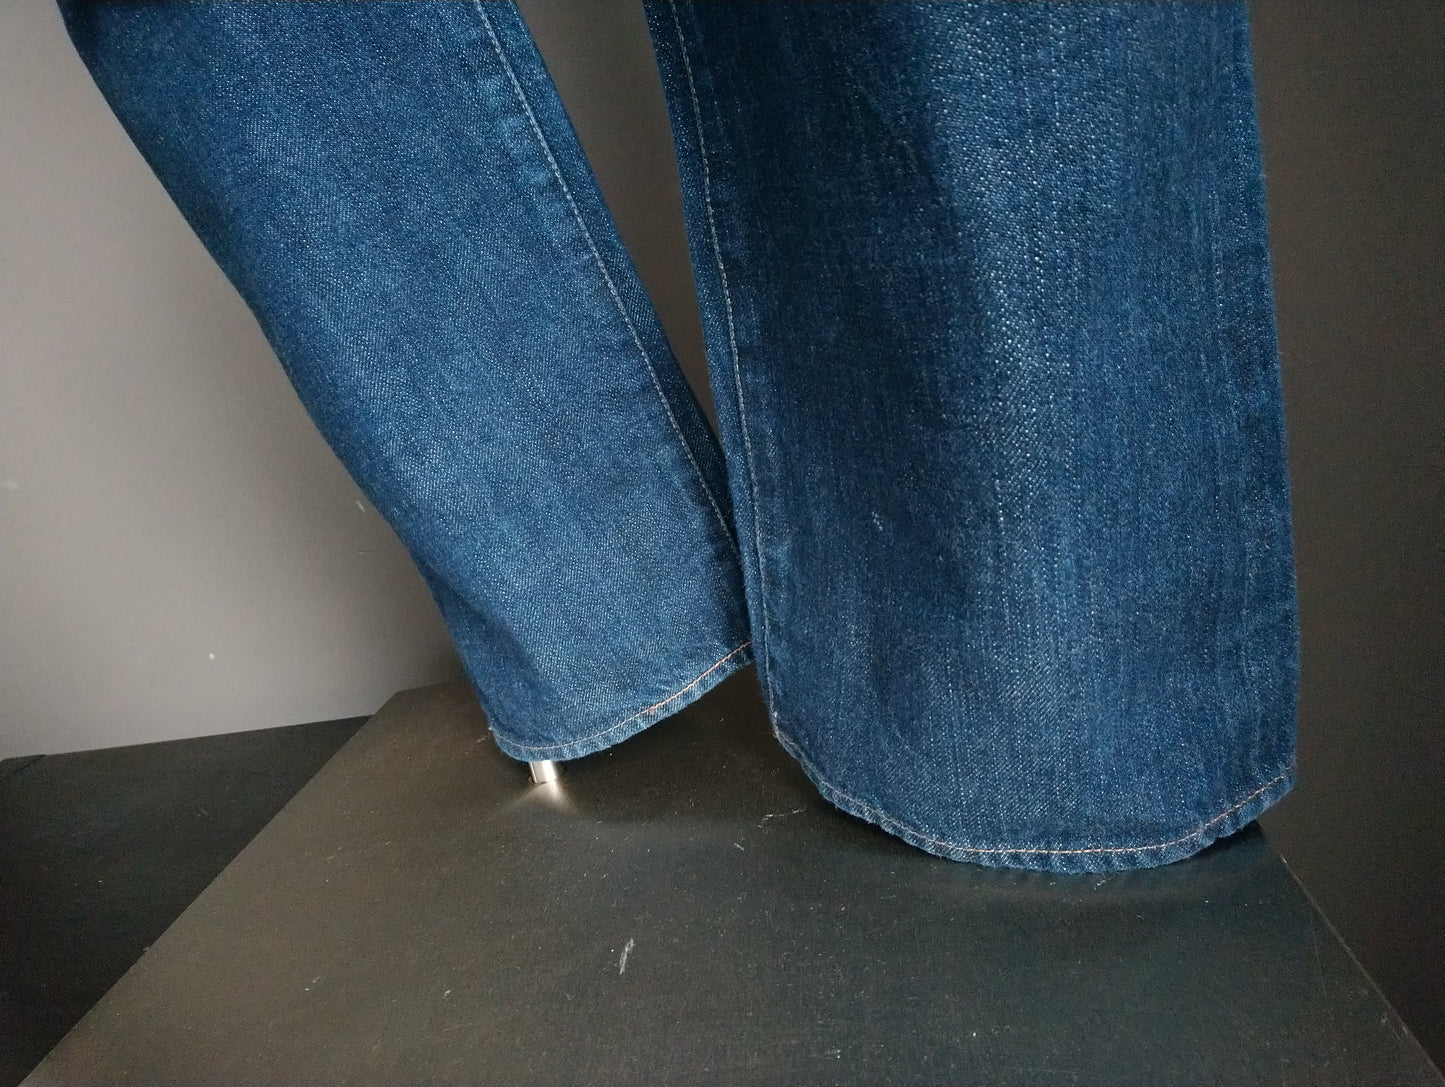 Nom De Guerre jeans. Donker Blauw gekleurd. Maat W36 - L36.